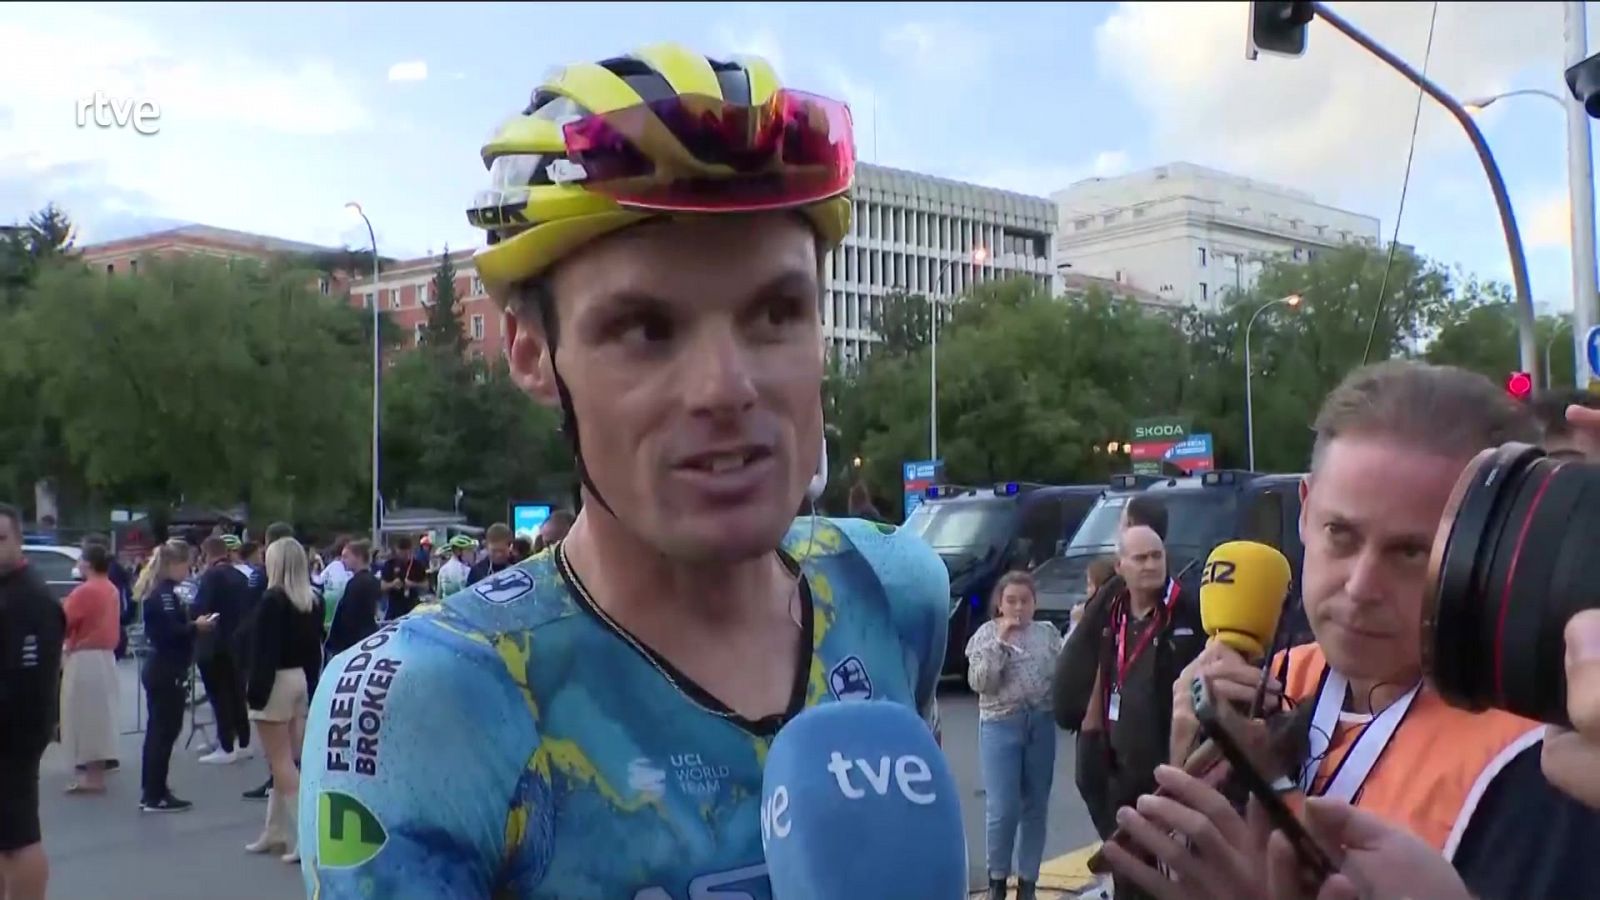 Luis León Sánchez: "Quiero ser recordado como un ciclista respetuoso. Eso premia más que todas las victorias" - ver ahora